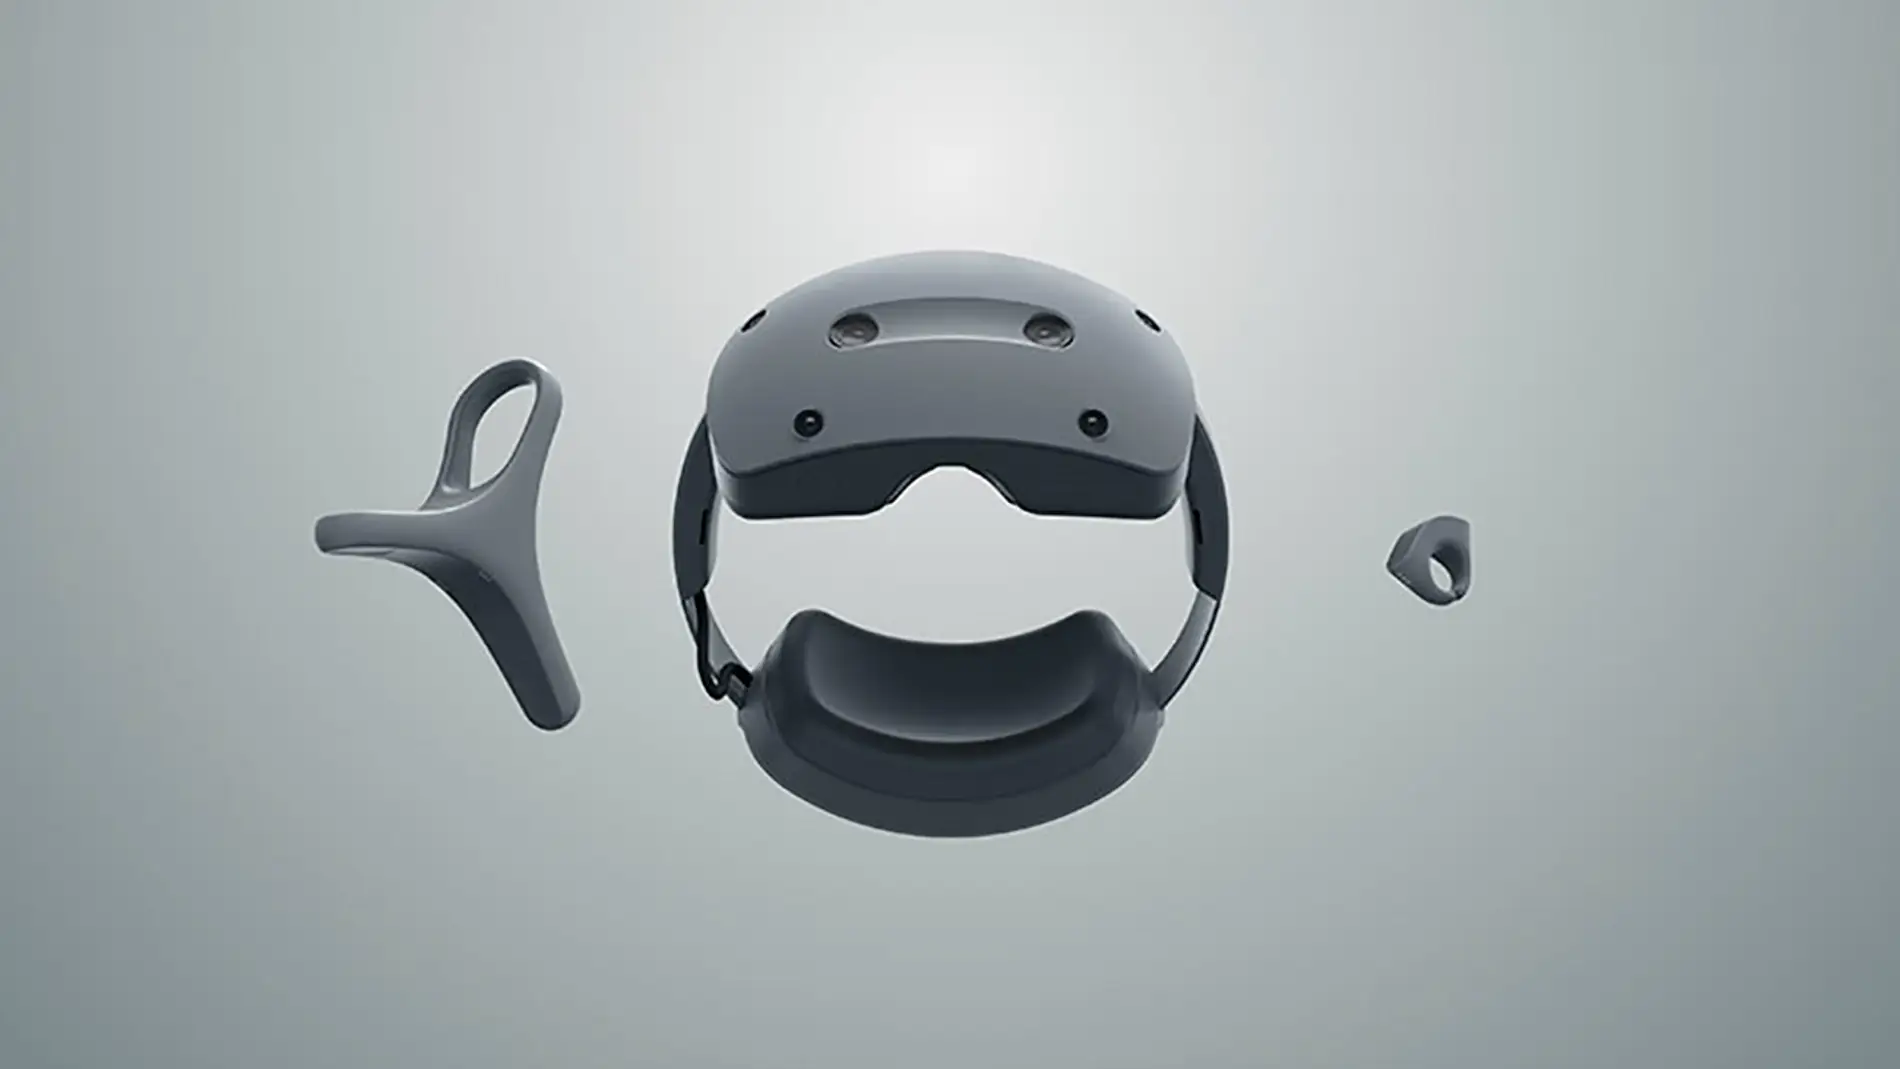 PlayStation desvela cómo serán sus nuevas gafas VR y el primer videojuego  exclusivo que recibirán